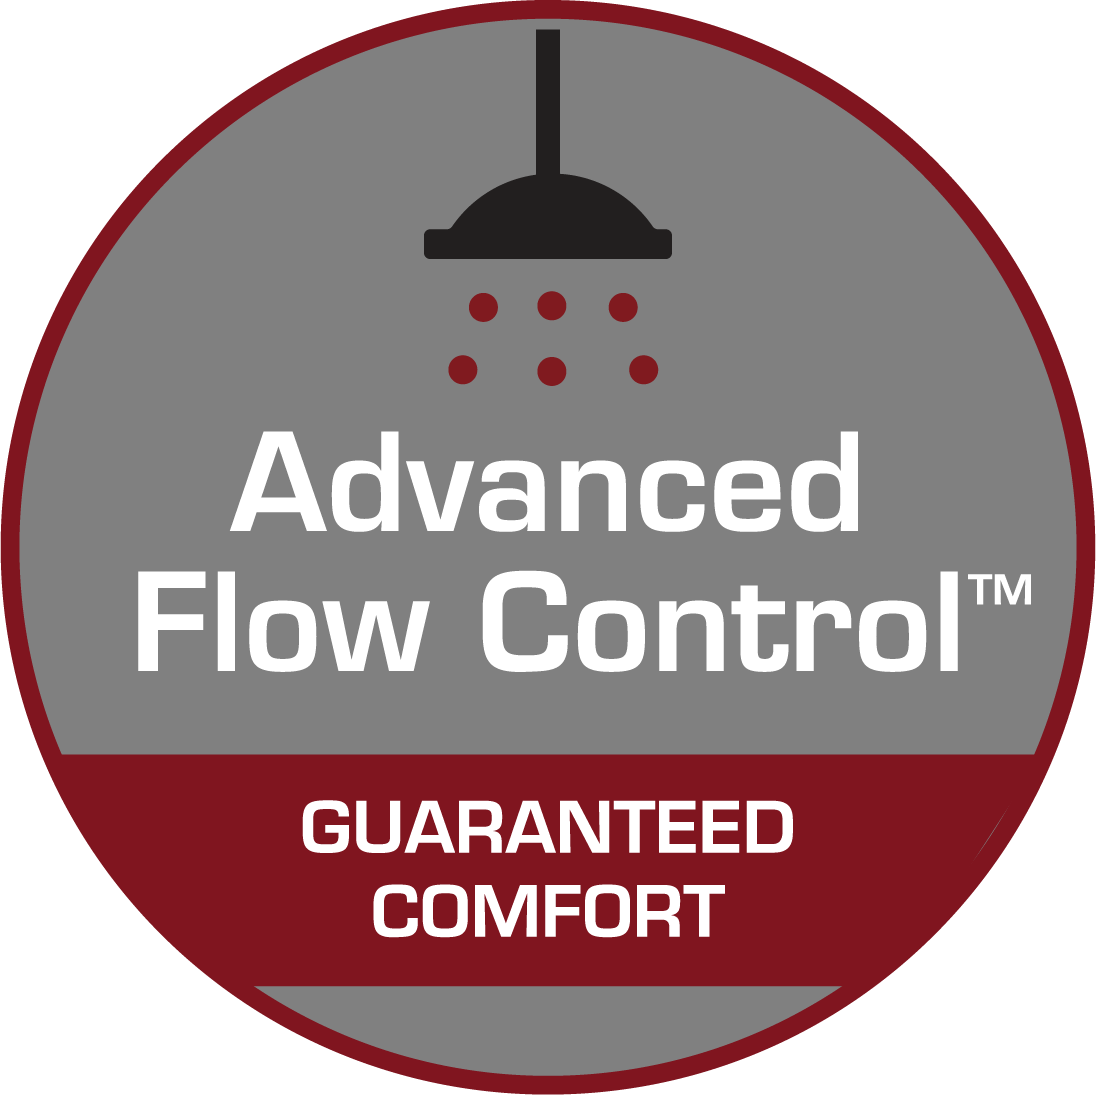 Advanced Flow Conrol TM